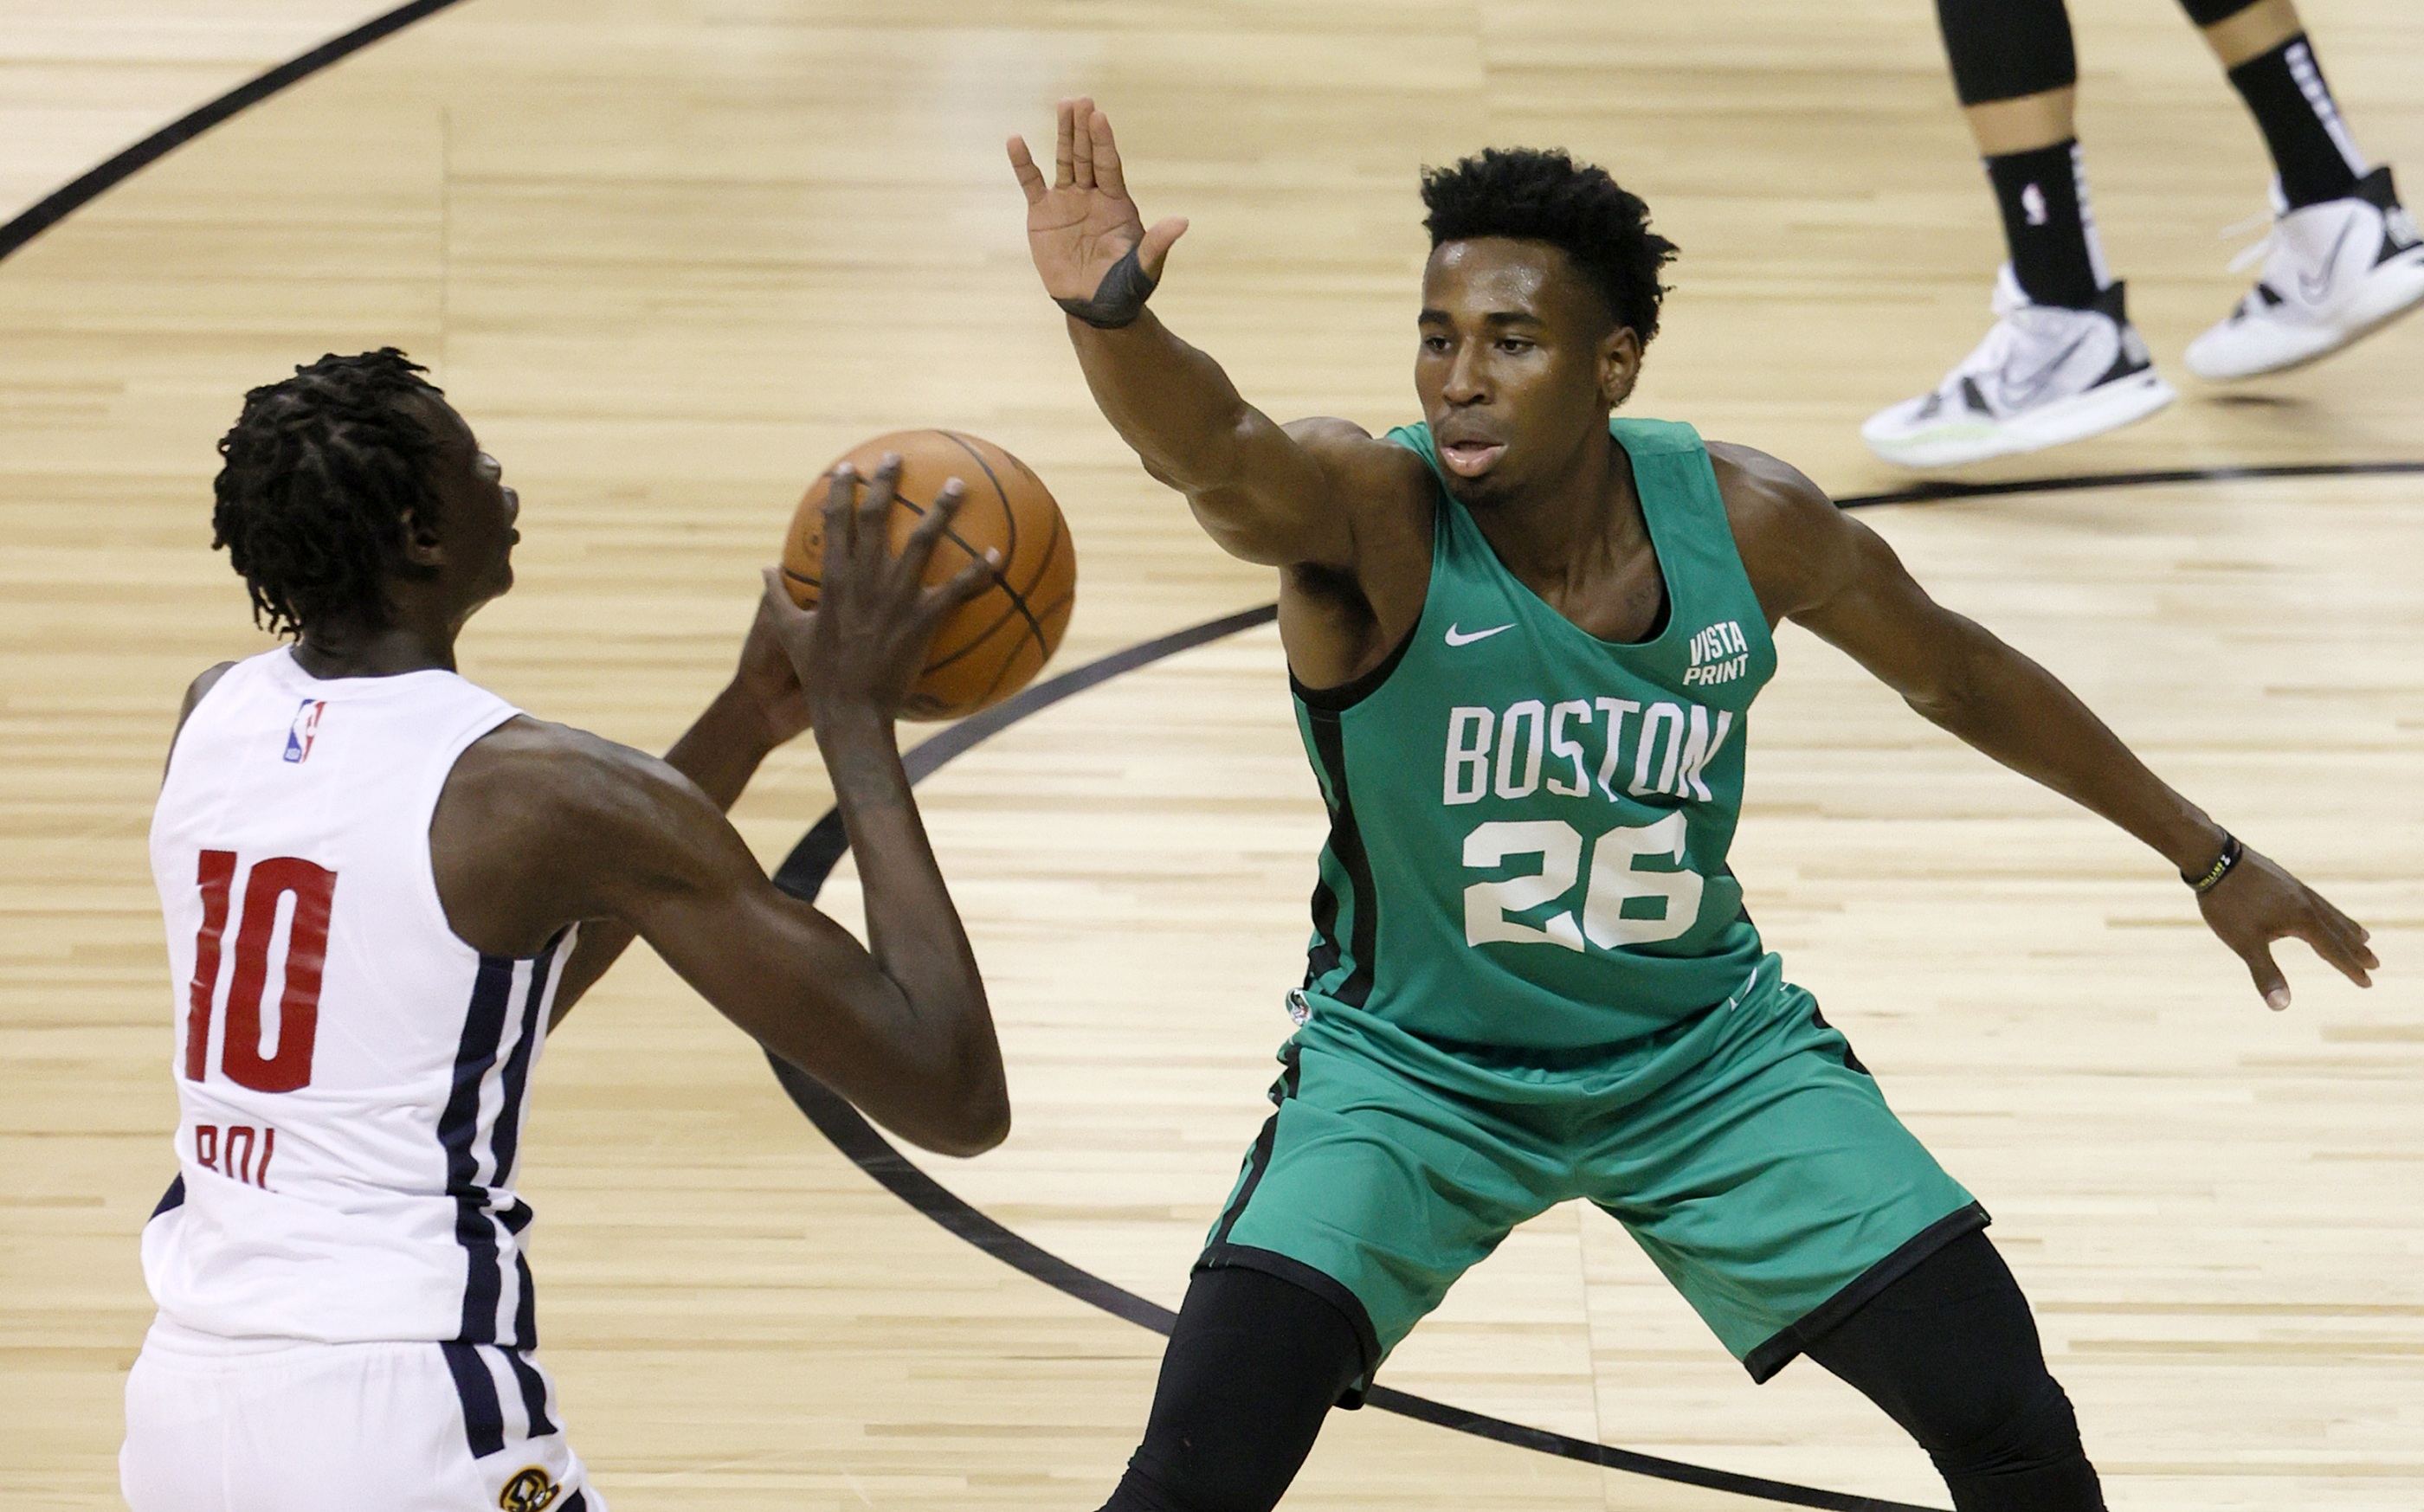 Boston Celtics Select Vistaprint as Next Jersey Patch Sponsor